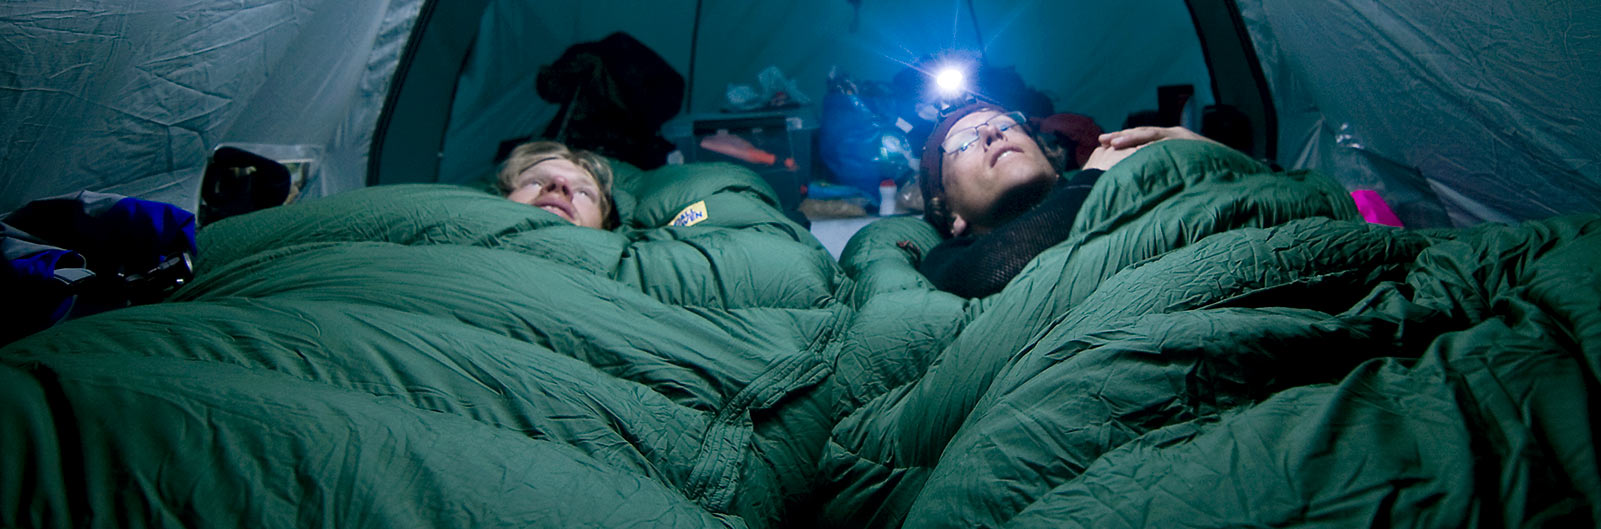 Tältare i tjocka gröna sovsäckar